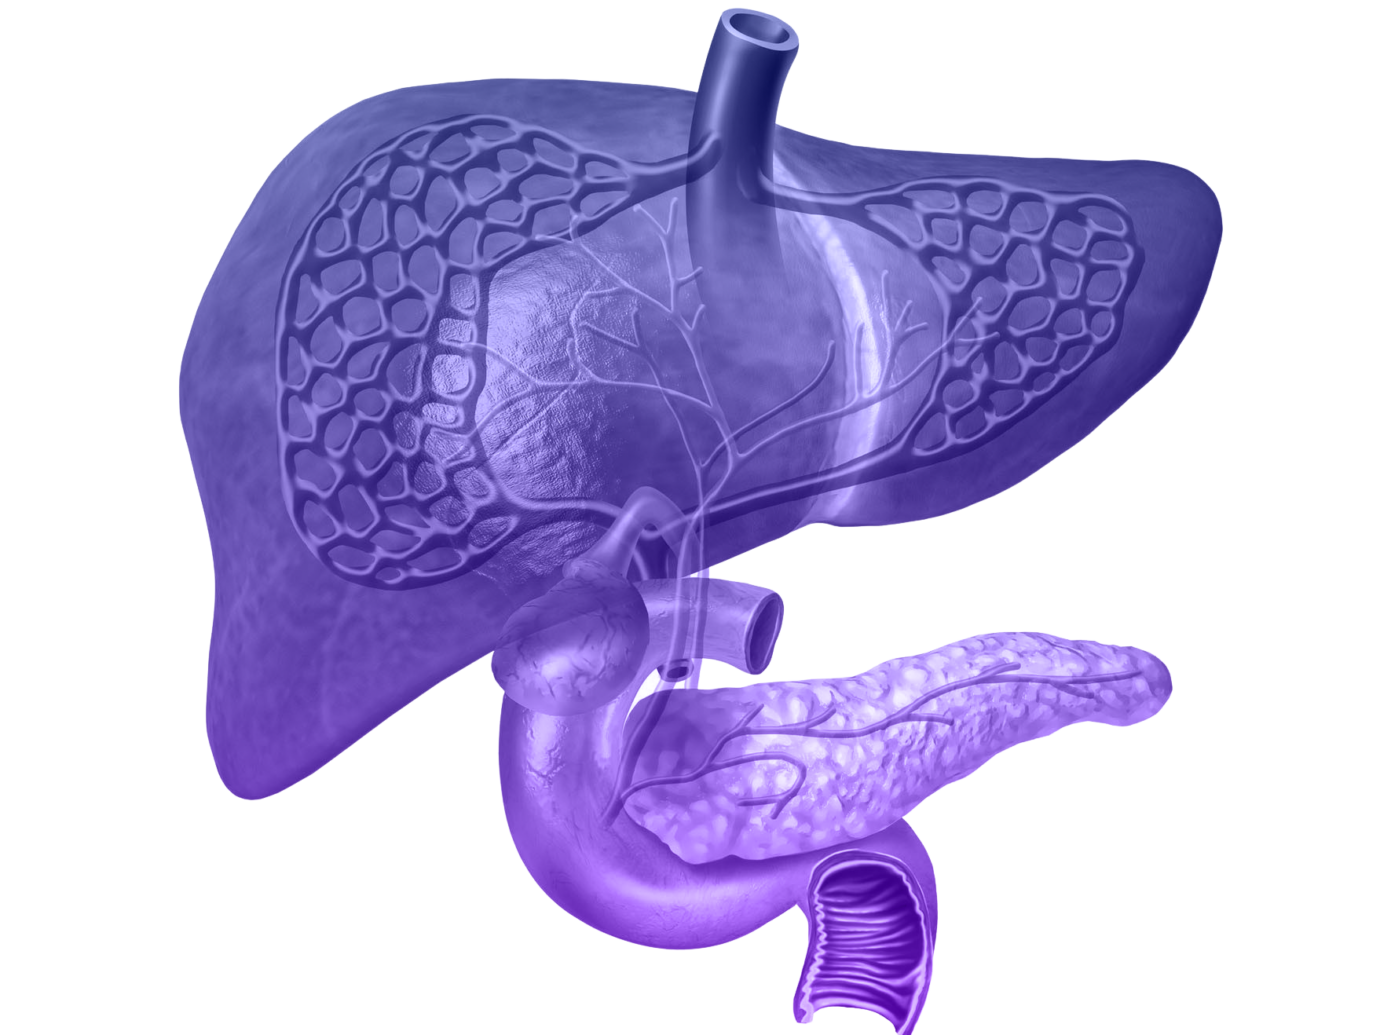 Pancreas rendering